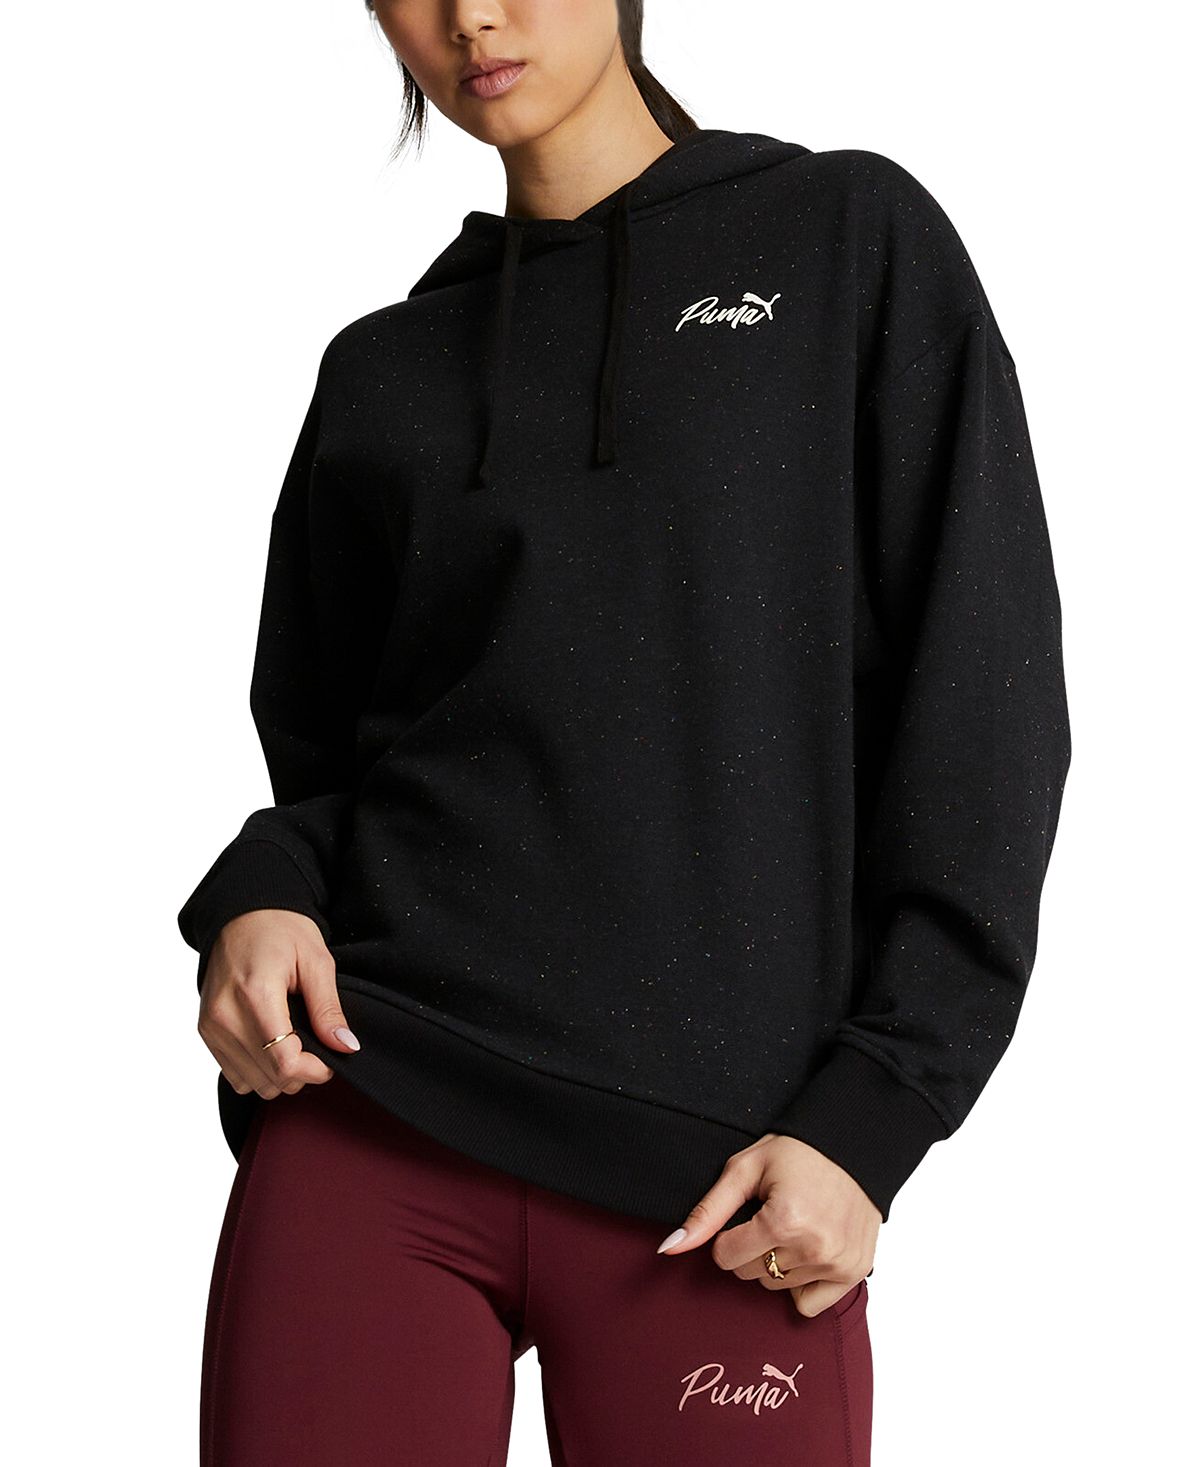 Женский хлопковый пуловер с капюшоном и логотипом Puma, черный